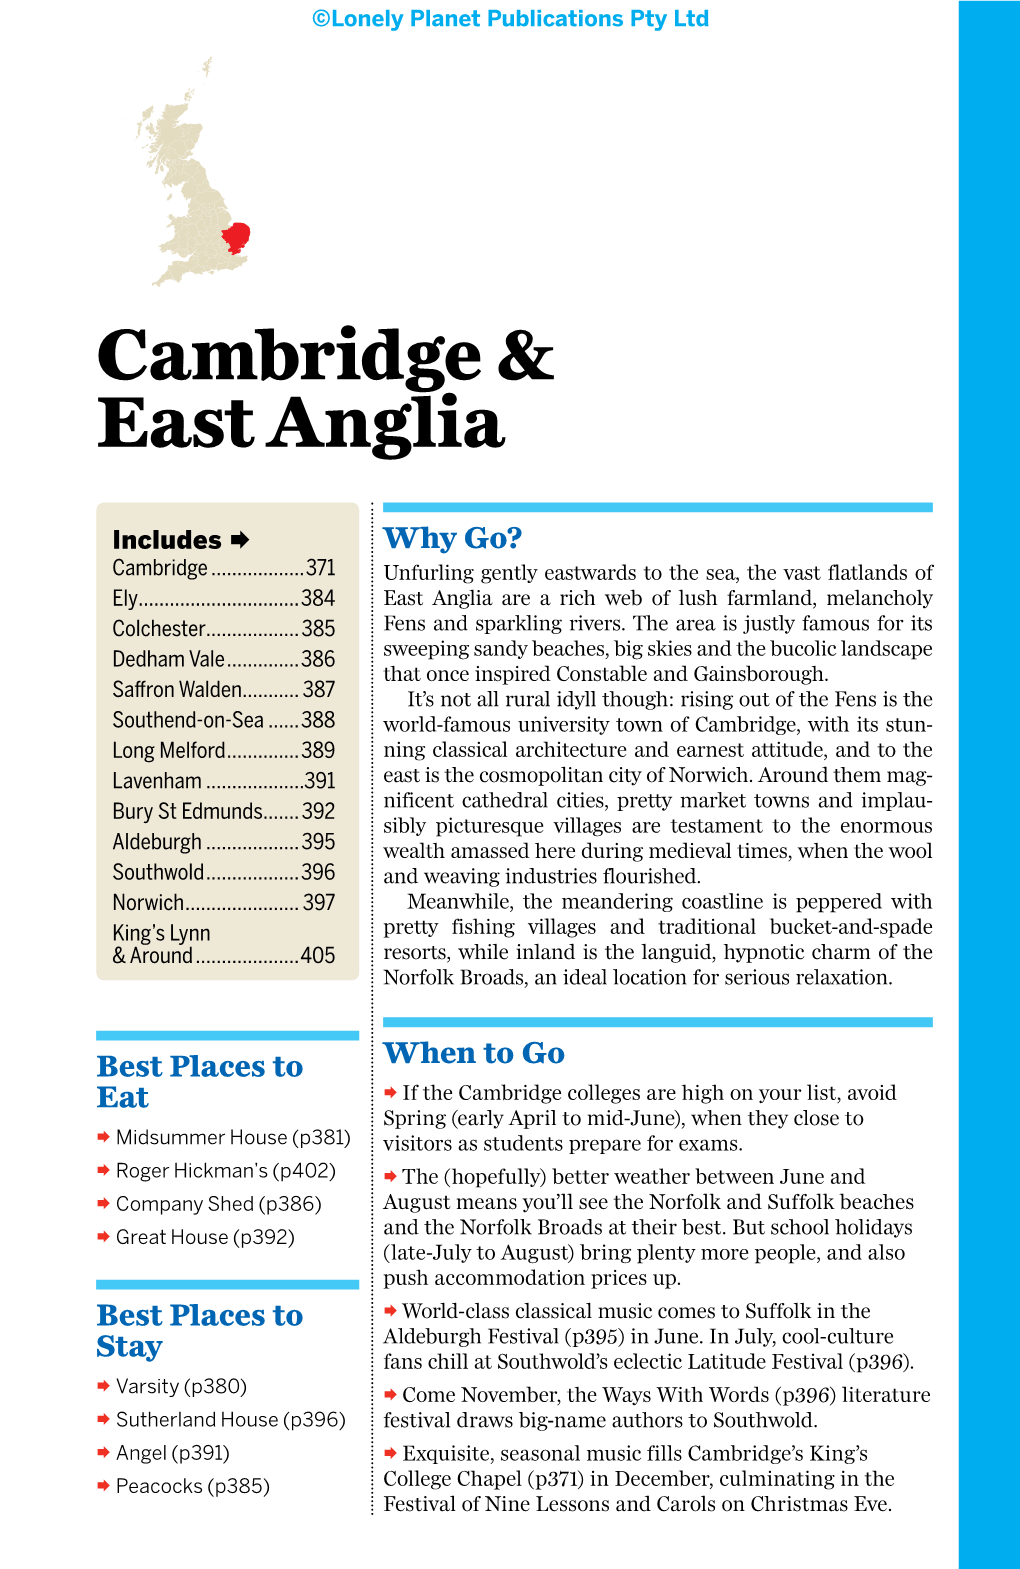 Cambridge & East Anglia